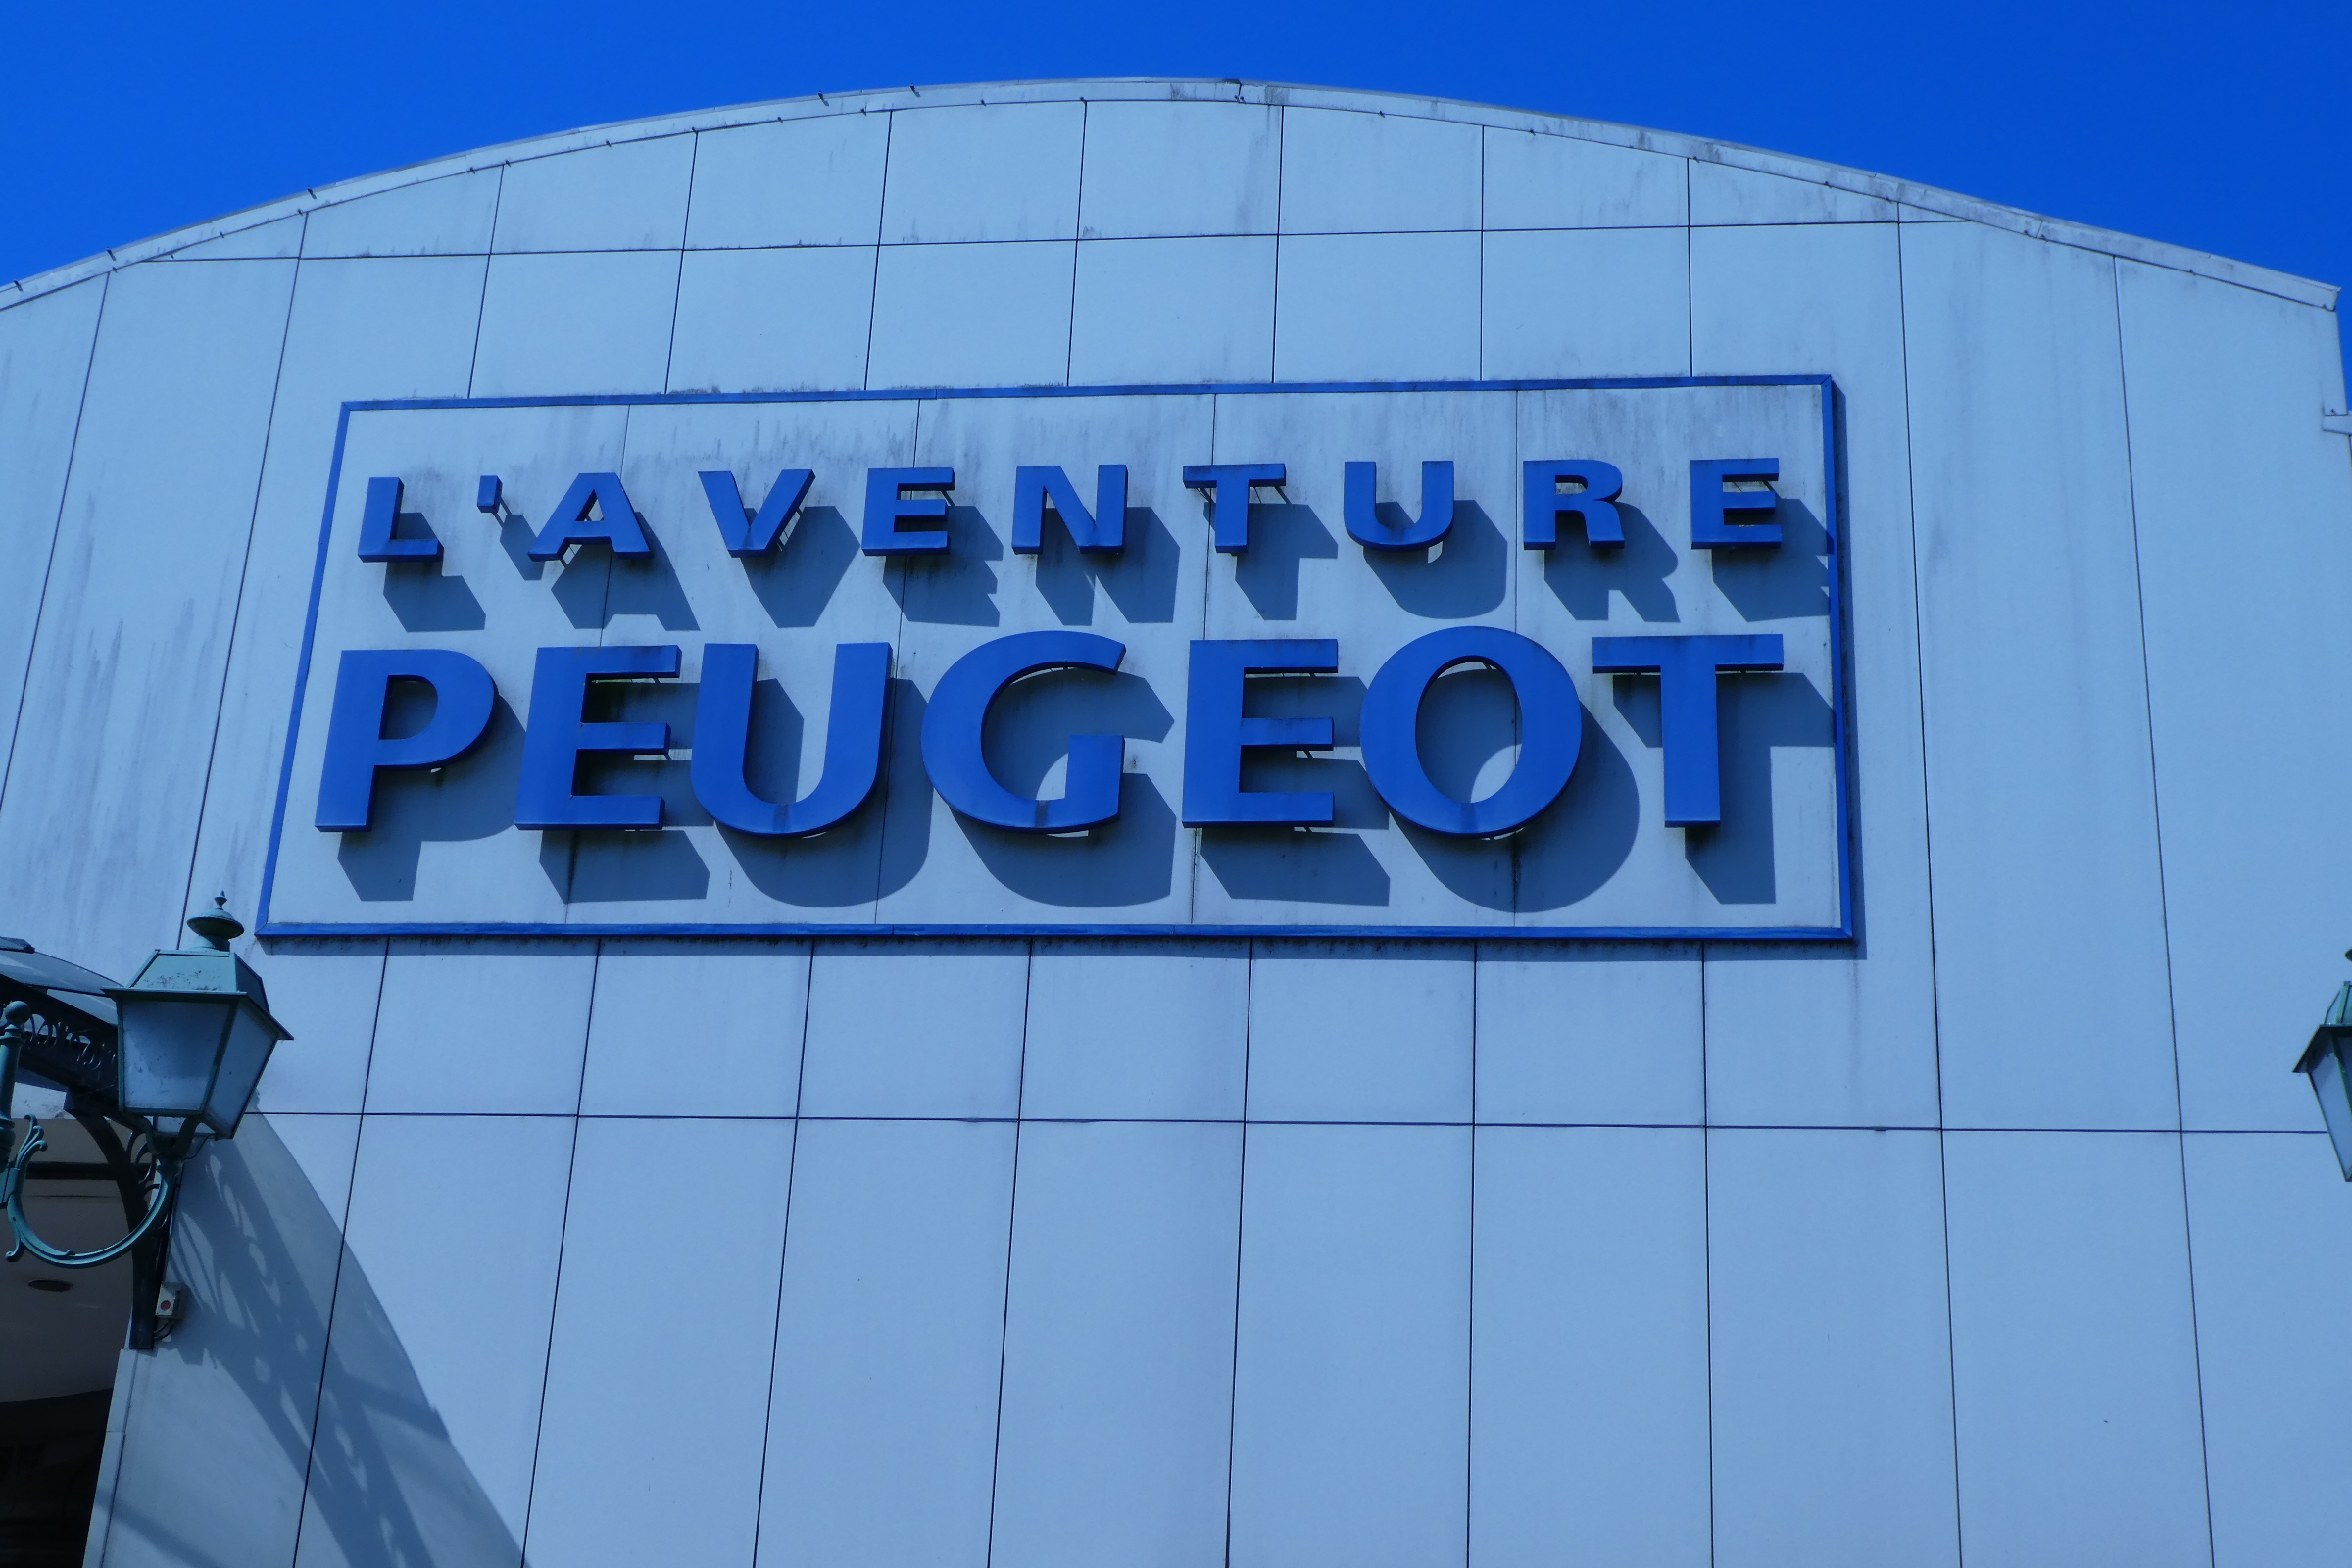 Sochaux, le musée Peugeot